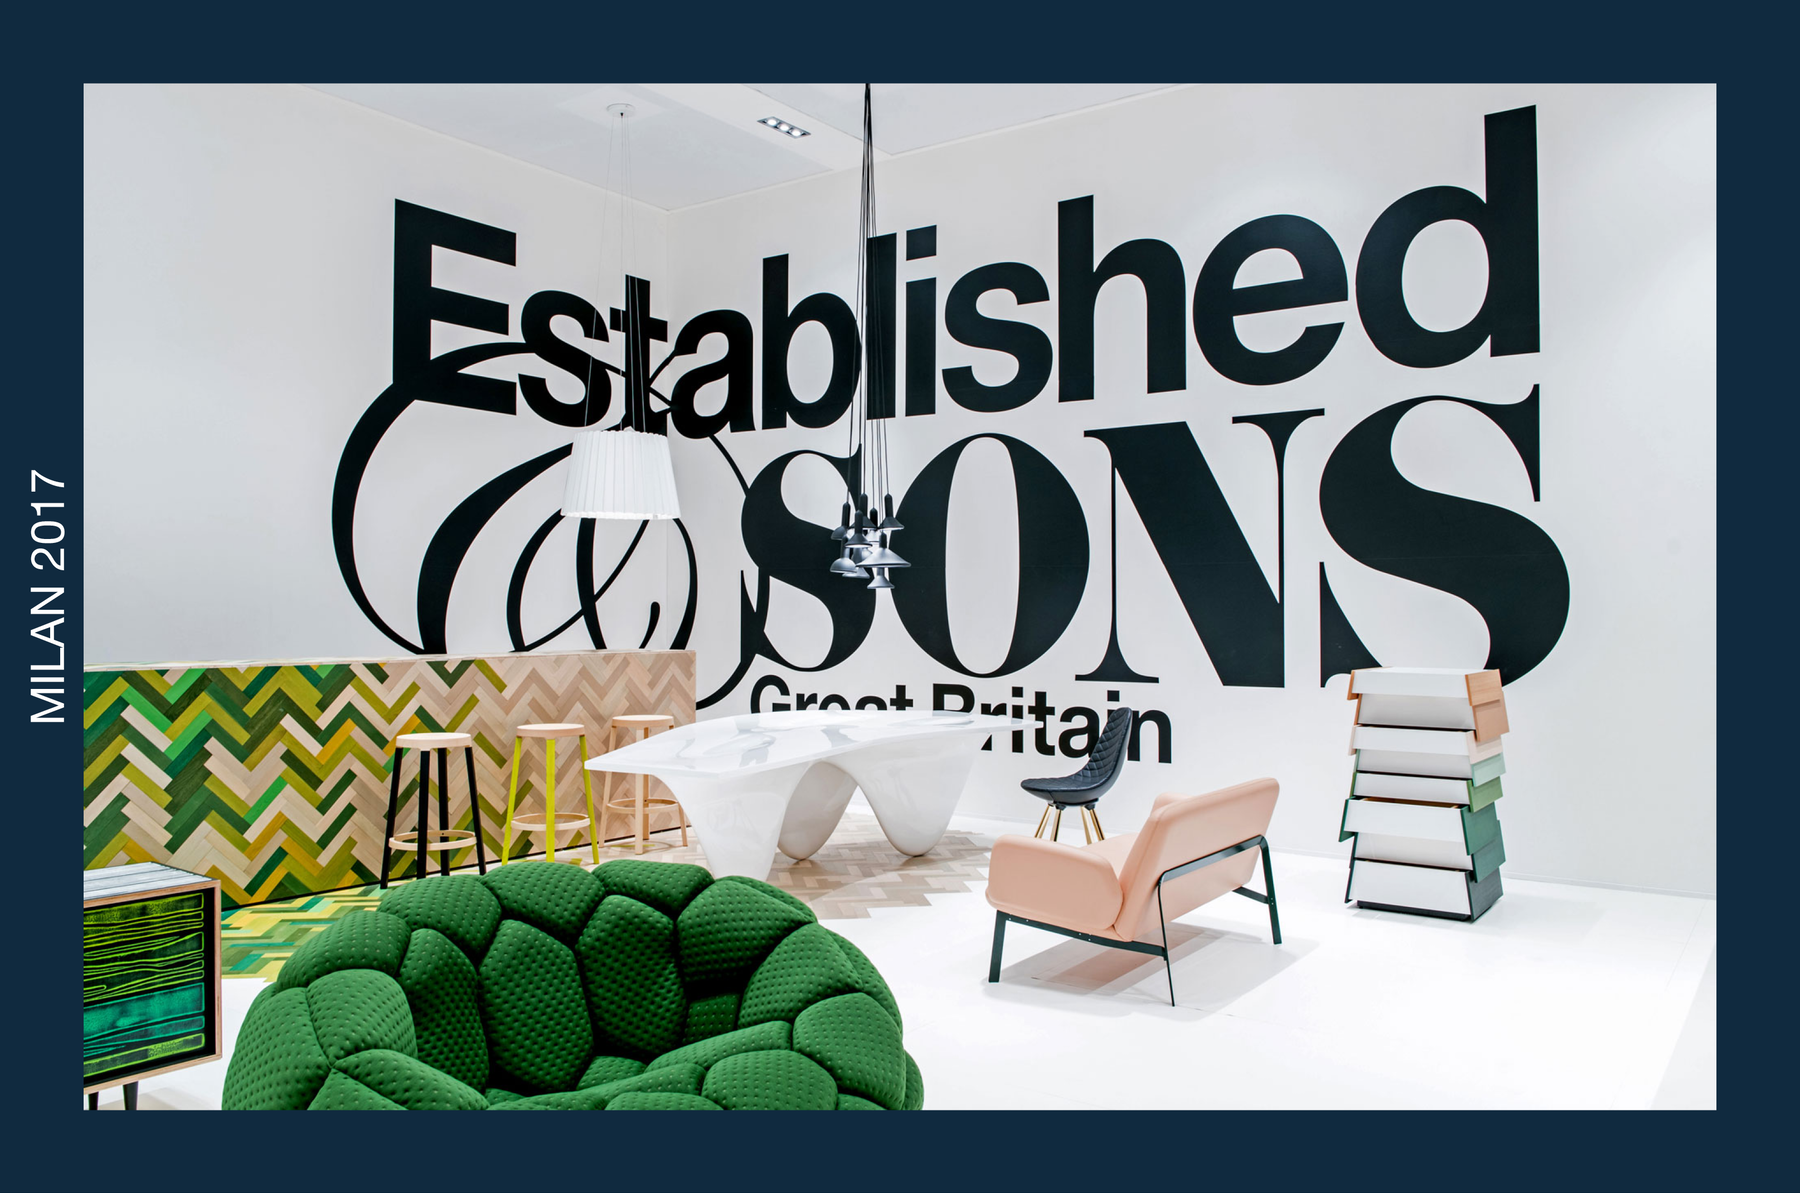 Established & Sons Milan